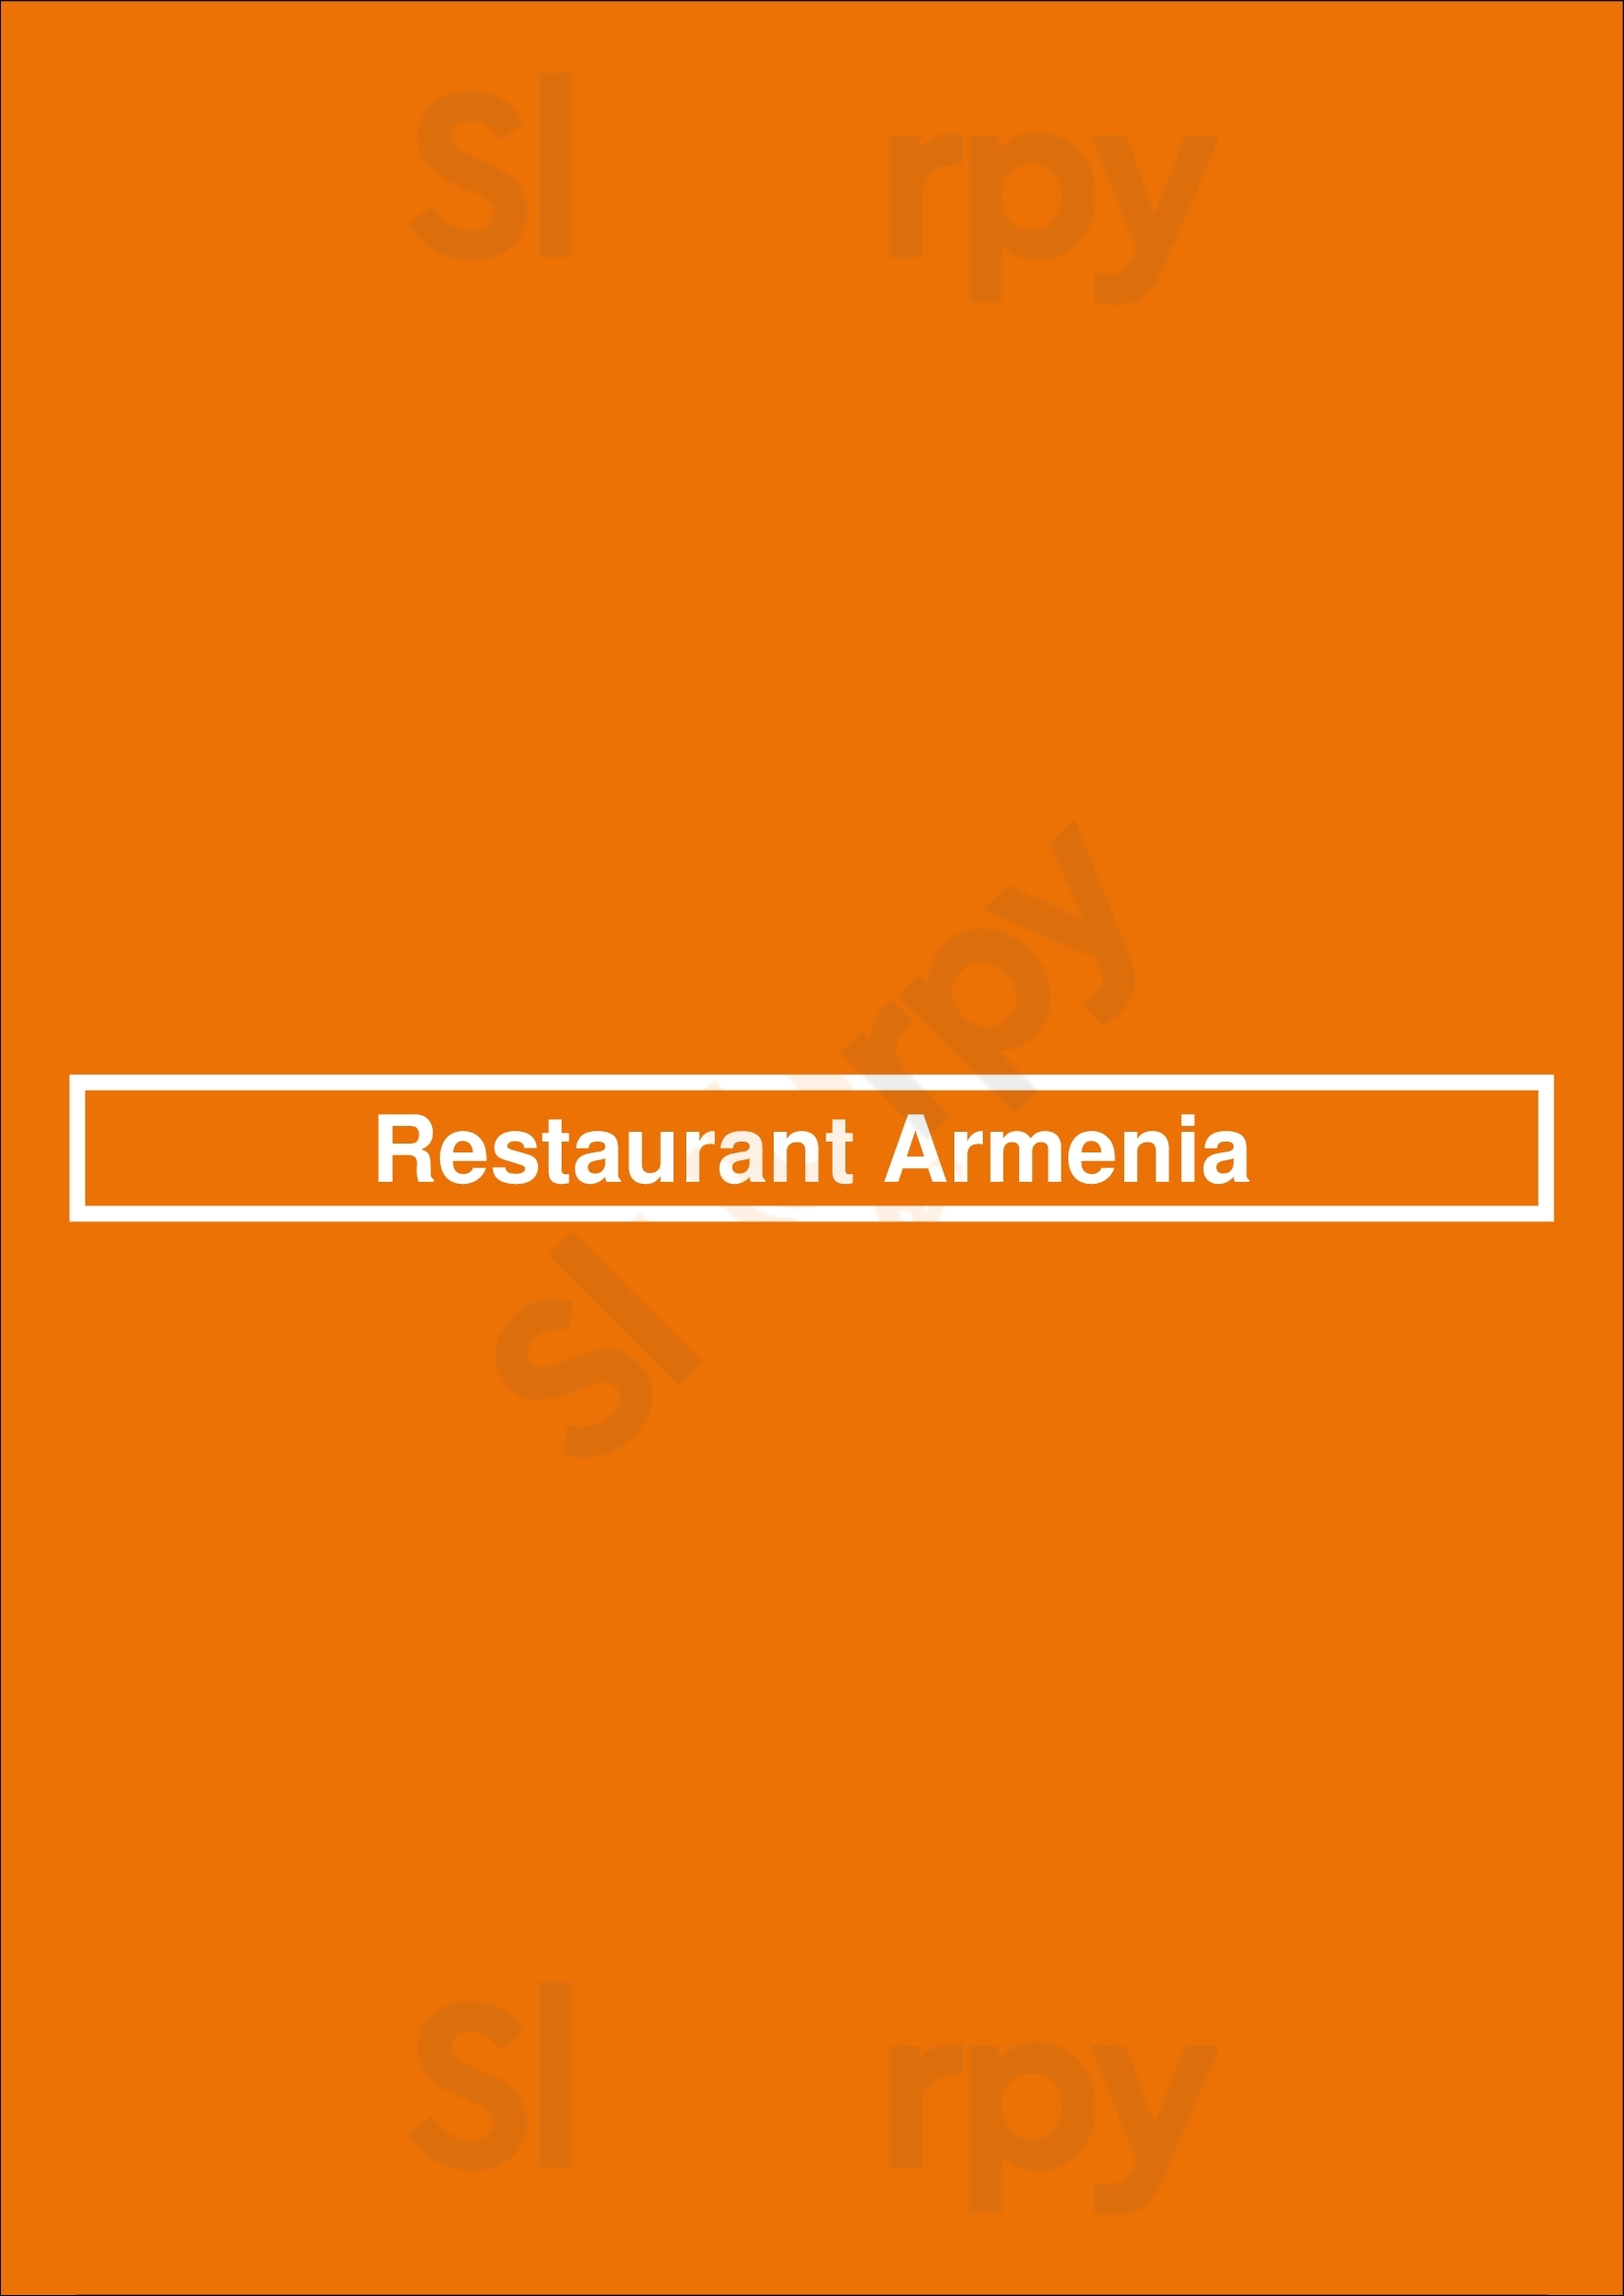 Restaurant Armenia Buenos Aires Menu - 1